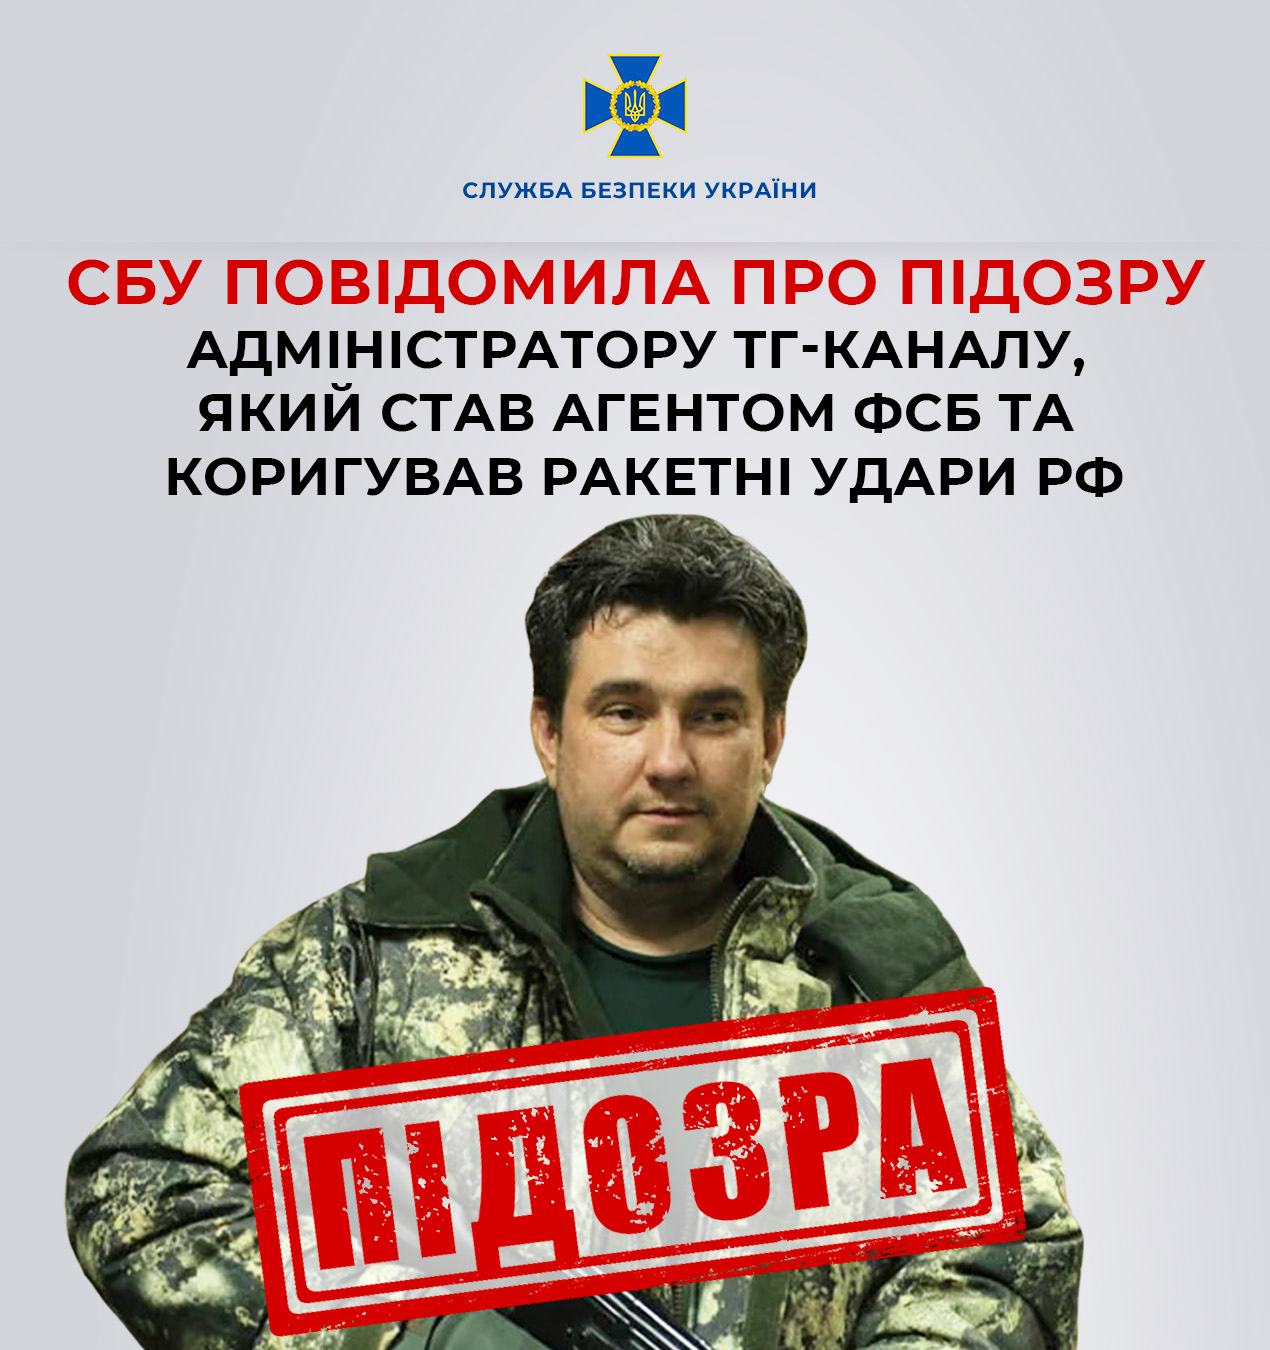 Проросійський блогер залучив до співпраці мешканця Закарпаття, який "зливав" локації військових частин (ФОТО)